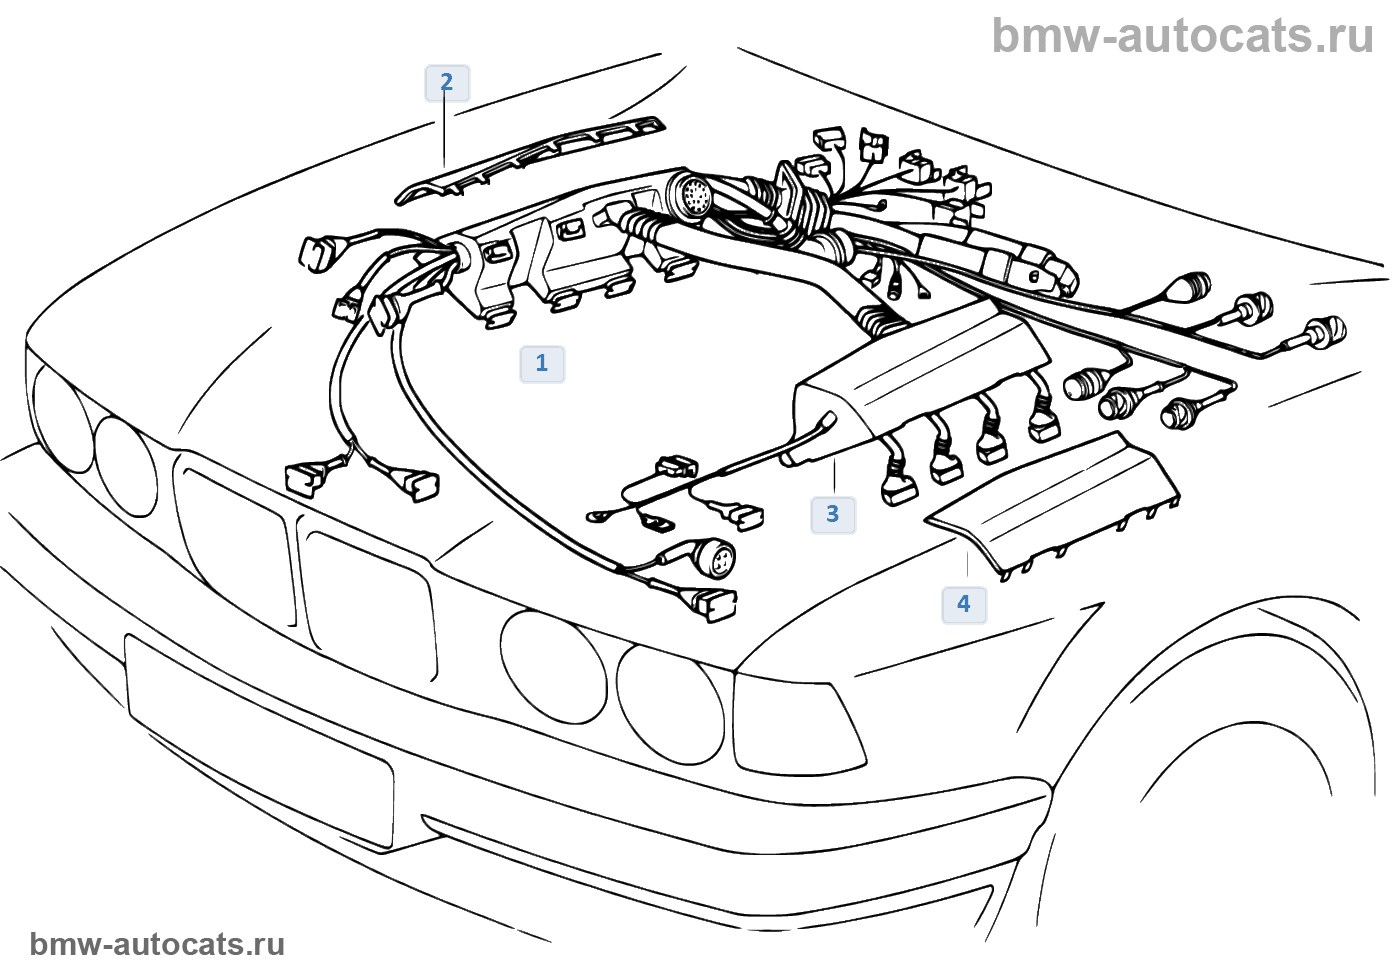 39 1 36 5. Жгуты проводов BMW e60. Схема проводки двигателя м50. Моторный отсек схема БМВ е39. Провода форсунок BMW e46.